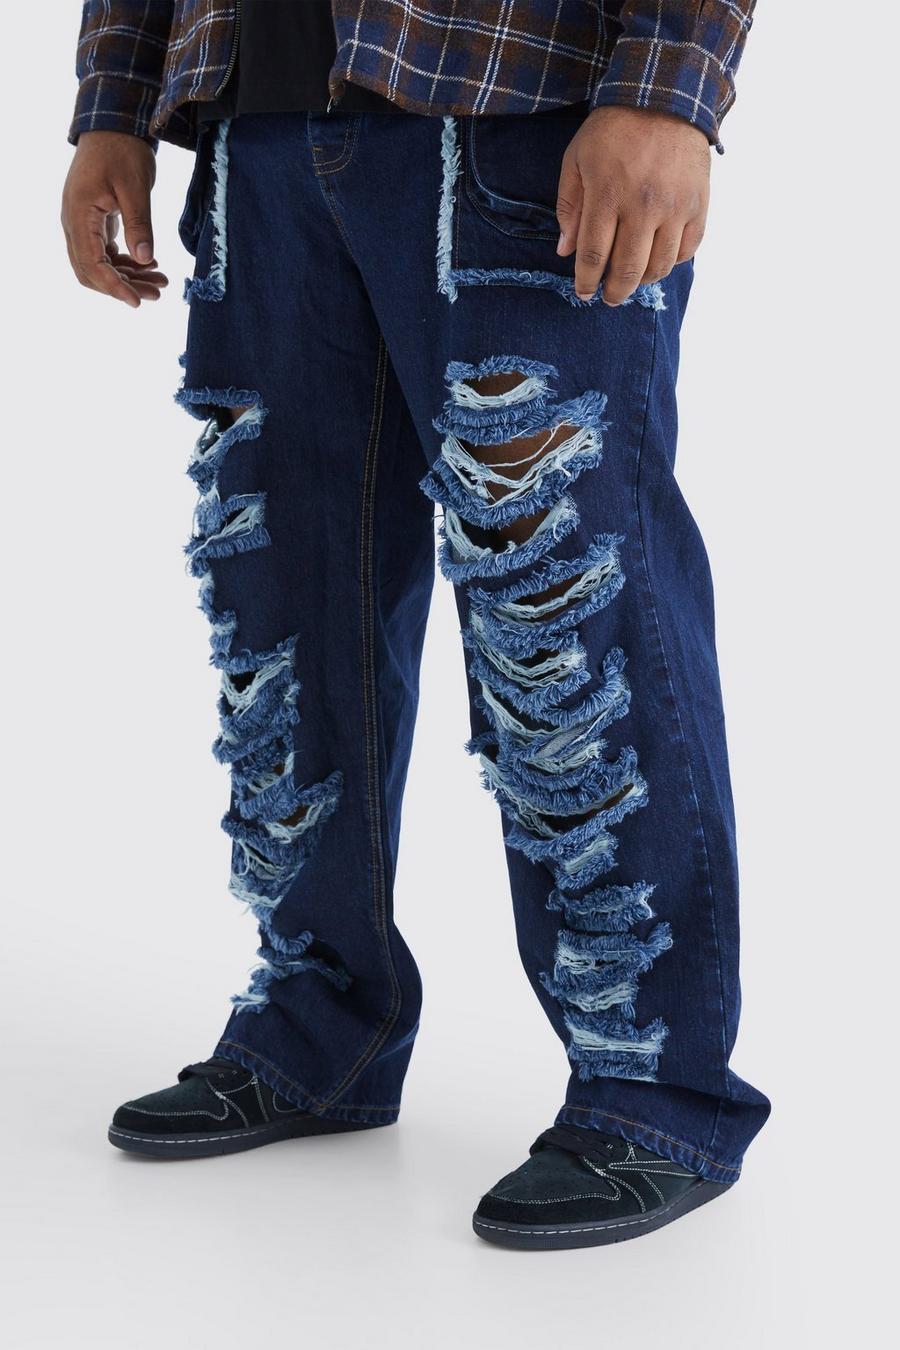 Jeans Plus Size rilassati in denim rigido con strappi e tasche Cargo, Indigo